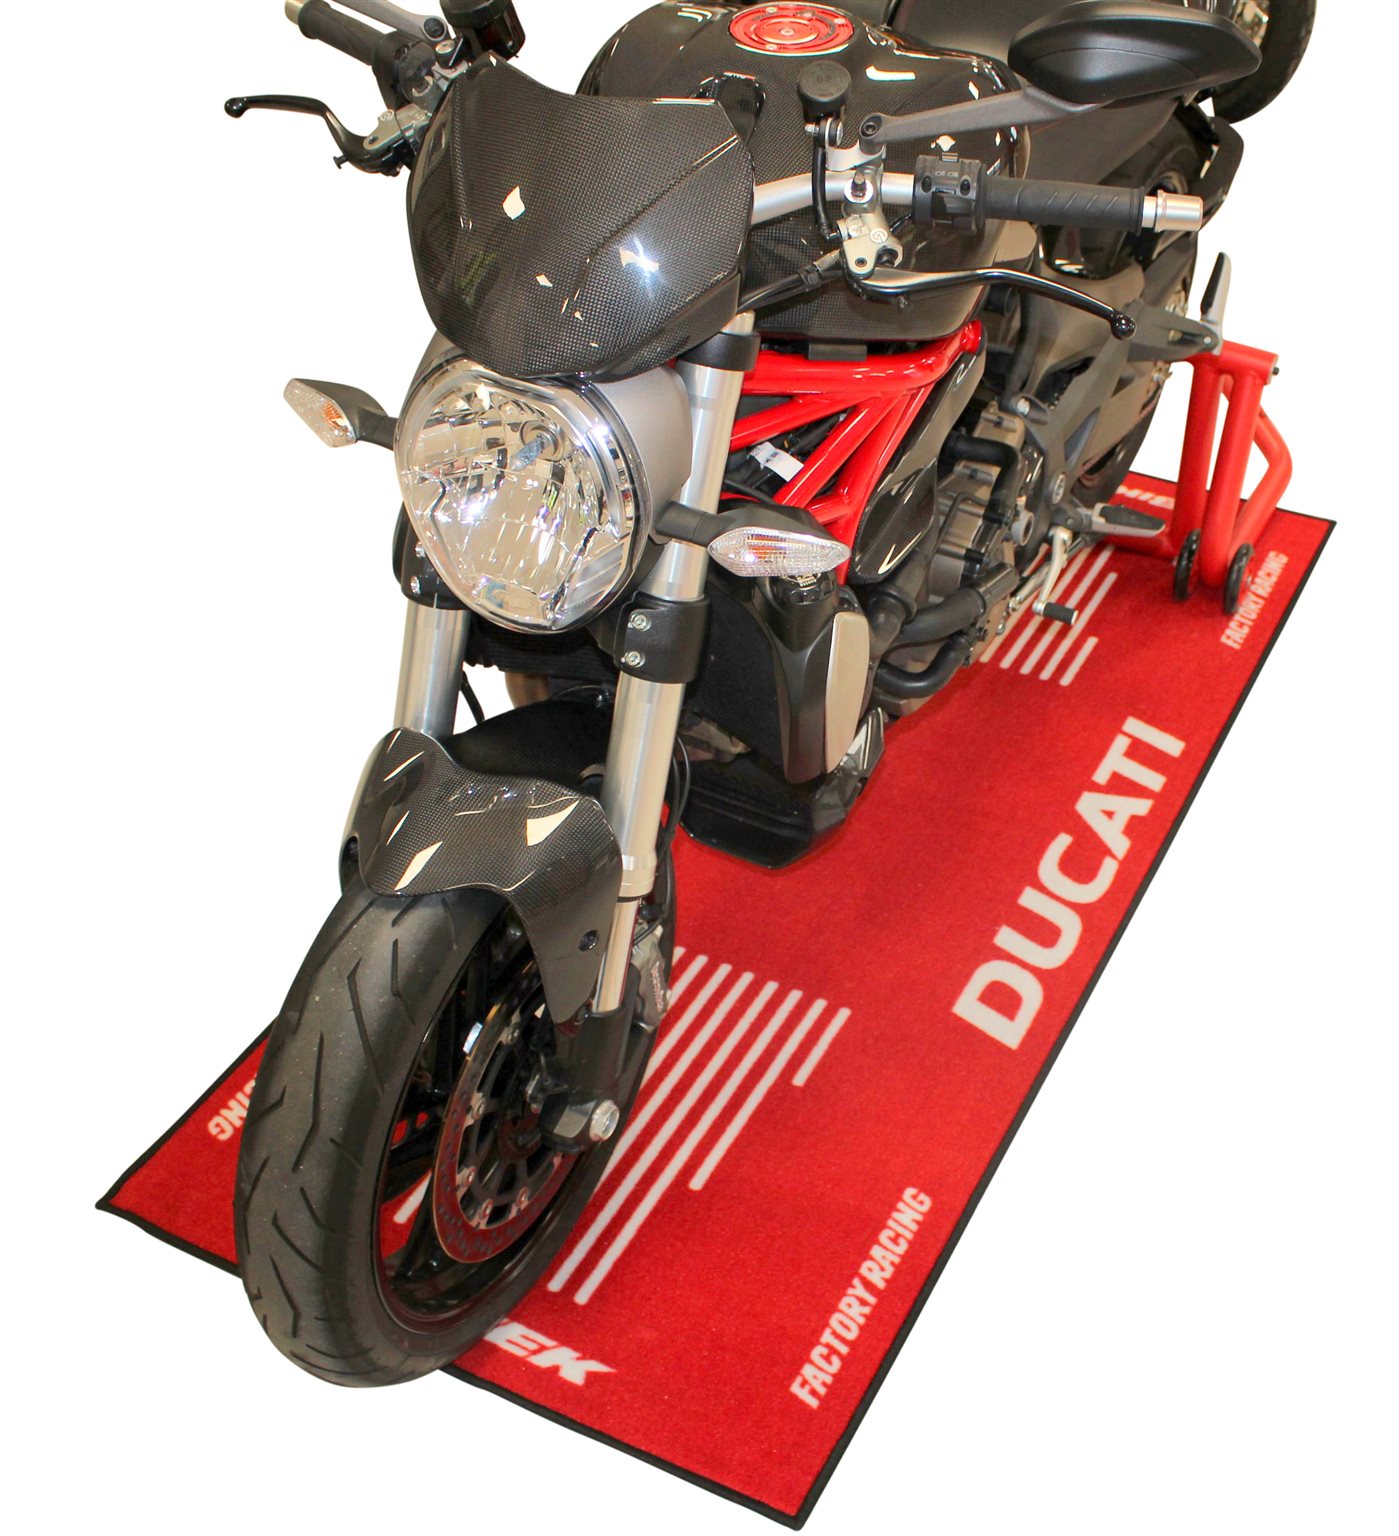 Motorradteppich, Ducati, rot, 191cm x 81cm um 69.00 EUR - 1000PS Shop -  Freizeit-Bekleidung